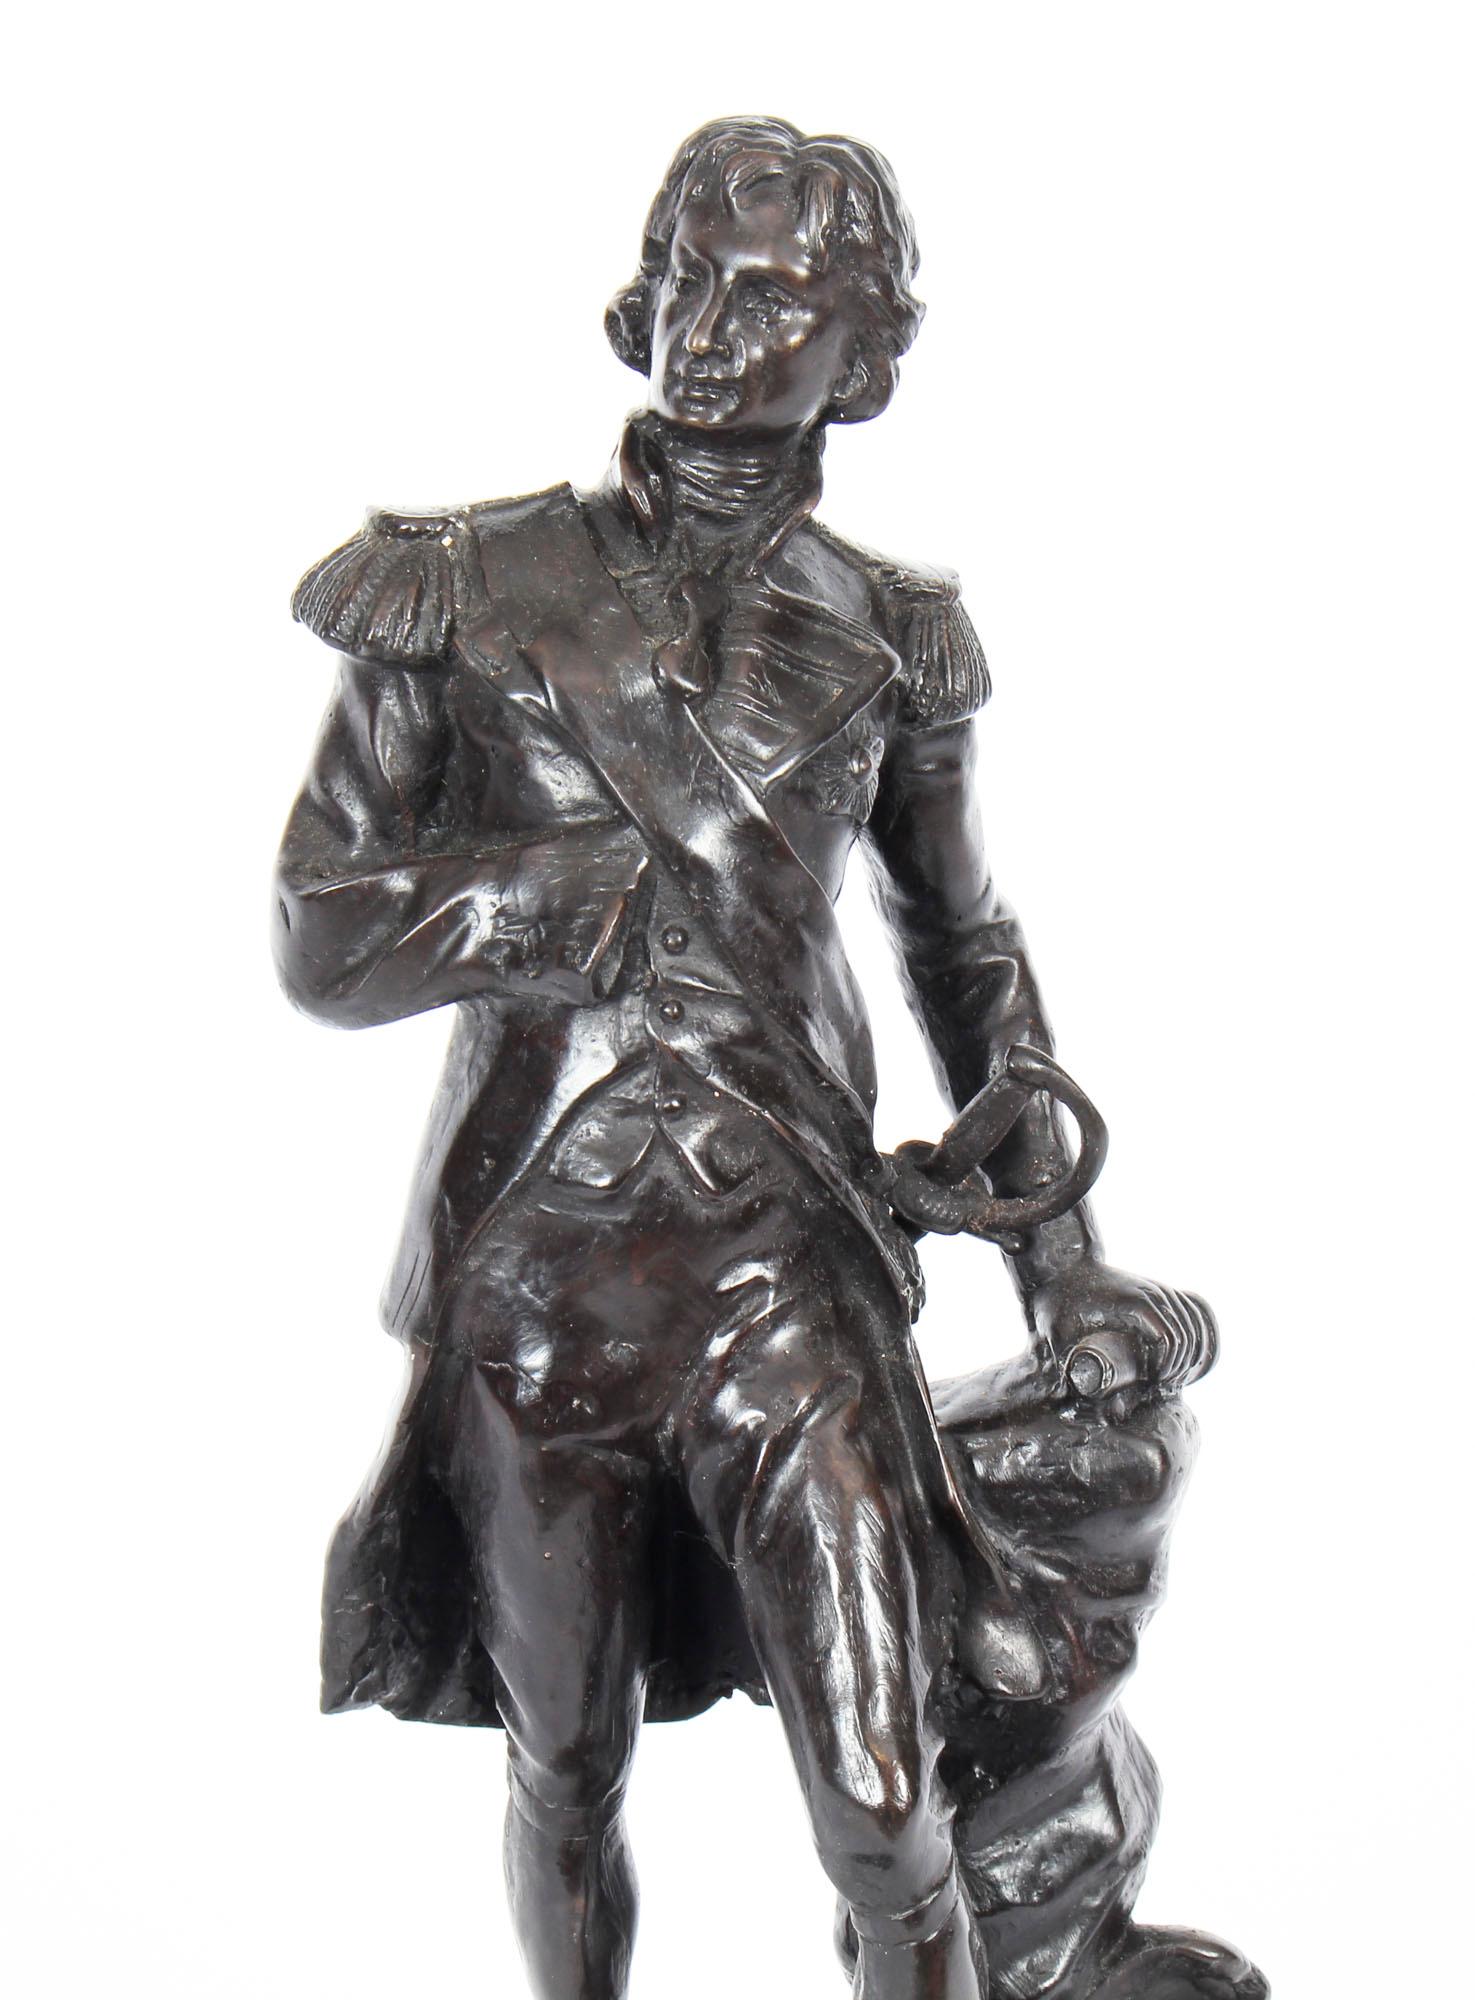 Eine beeindruckende Bronzeskulptur, die einen der größten britischen Militärhelden aller Zeiten darstellt,  aus dem späten 20. Jahrhundert.

Am 21. Oktober 1805 verließ die französisch-spanische Flotte den Hafen und die Flotte von Admiral Horatio